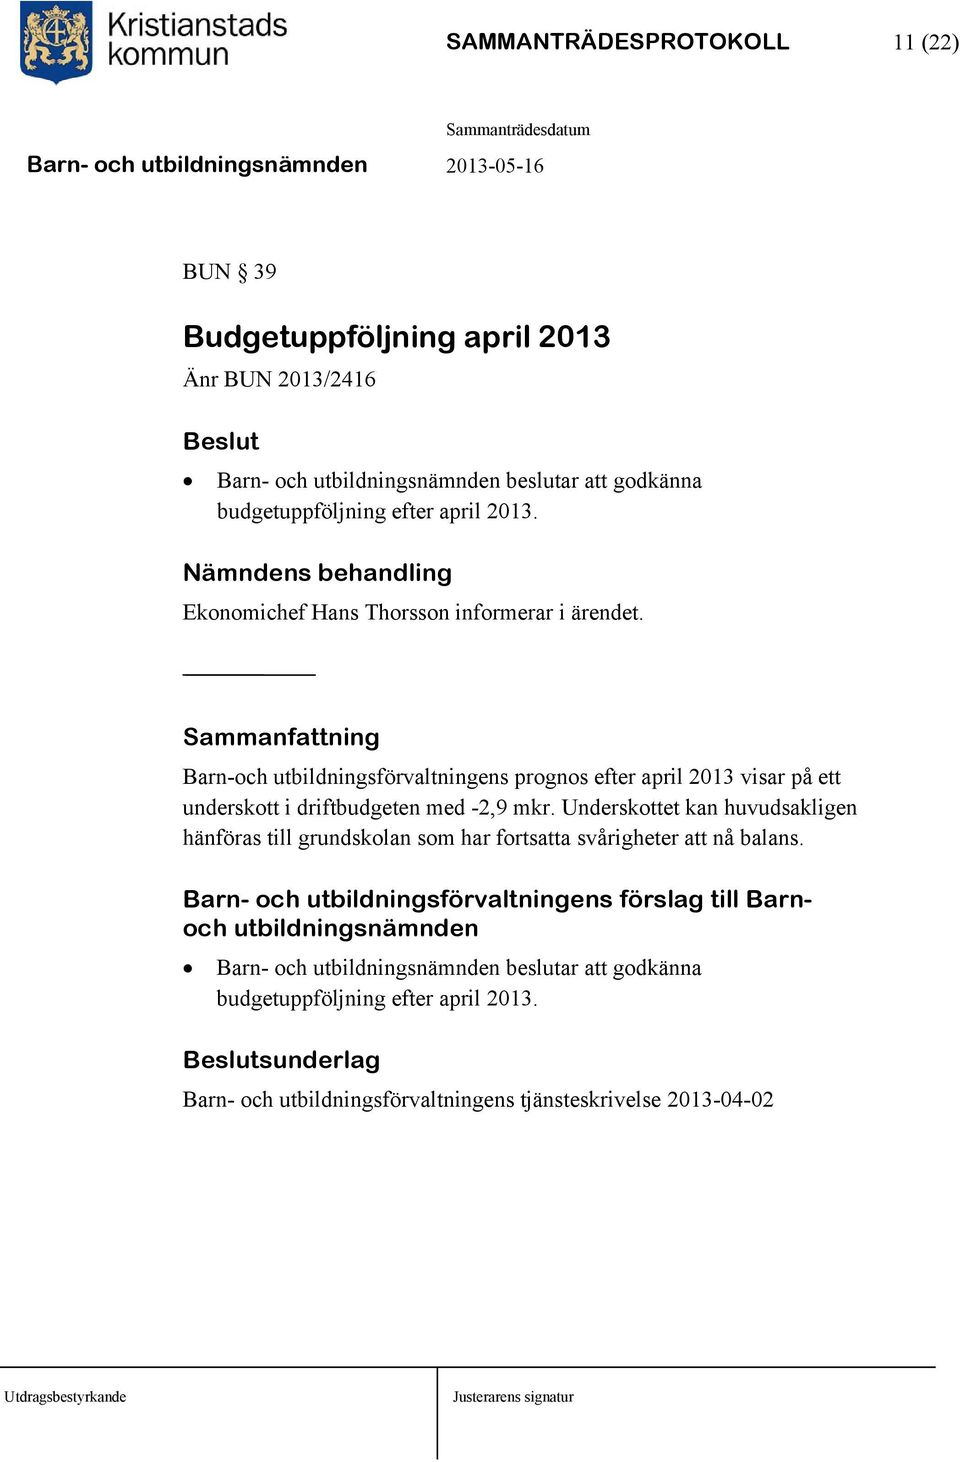 Sammanfattning Barn-och utbildningsförvaltningens prognos efter april 2013 visar på ett underskott i driftbudgeten med -2,9 mkr.